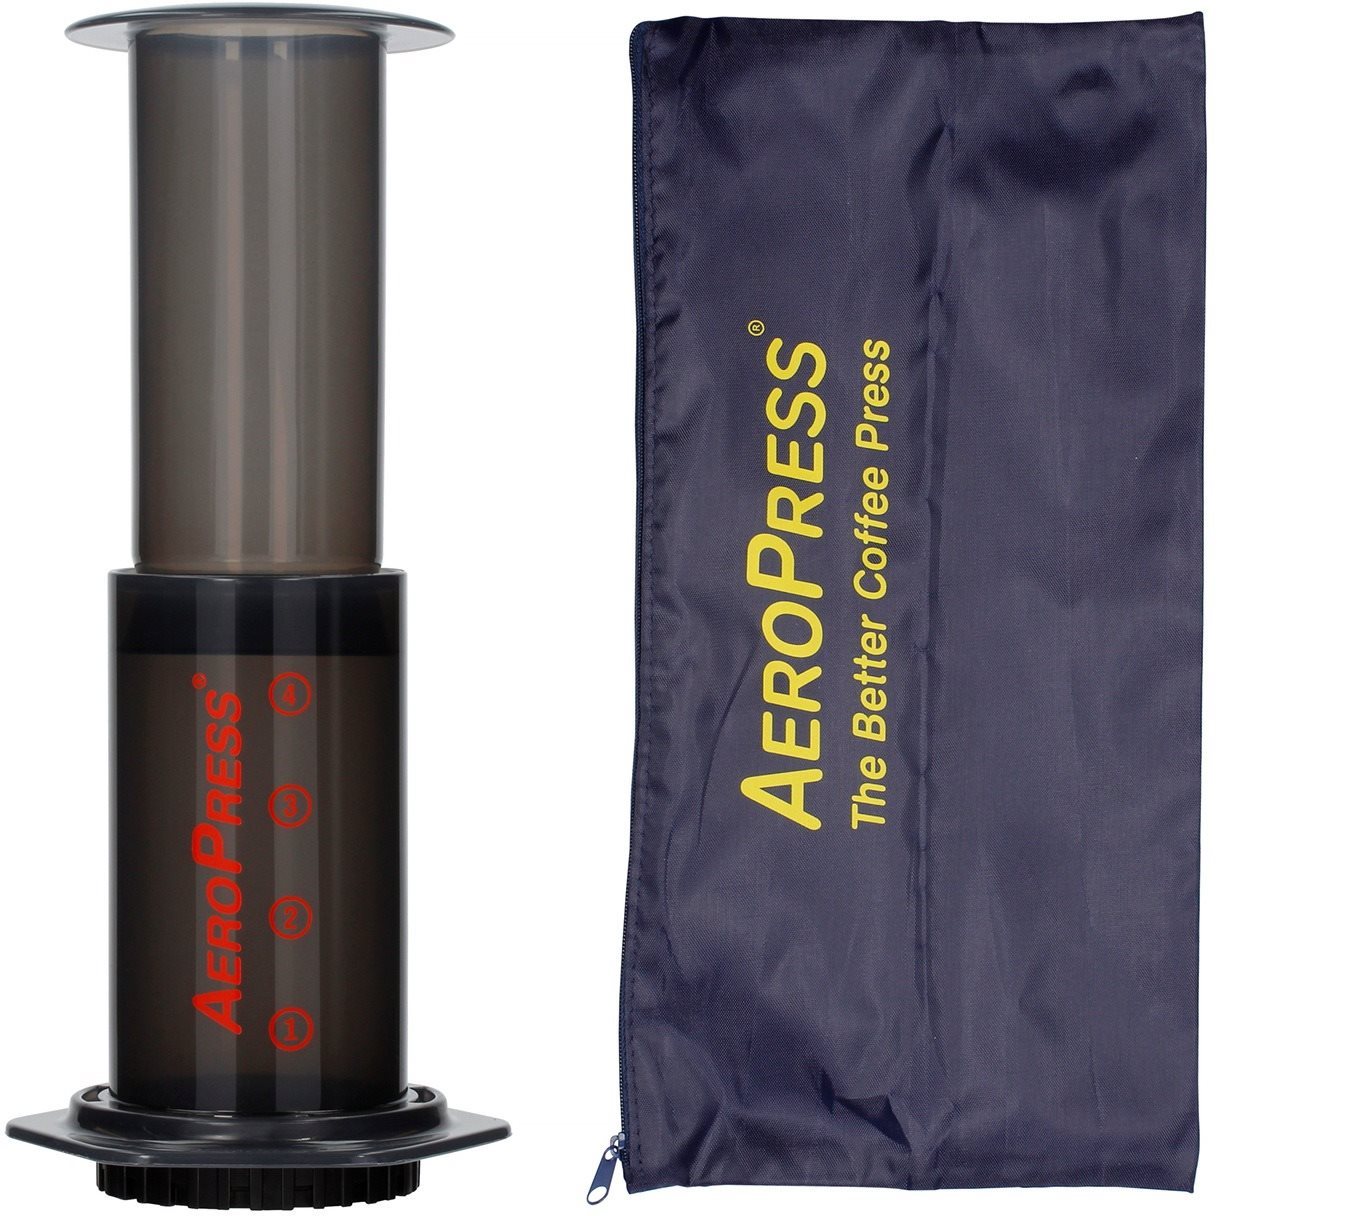 Kézi kávéfőző AeroPress Aerobie kézi kávéfőző